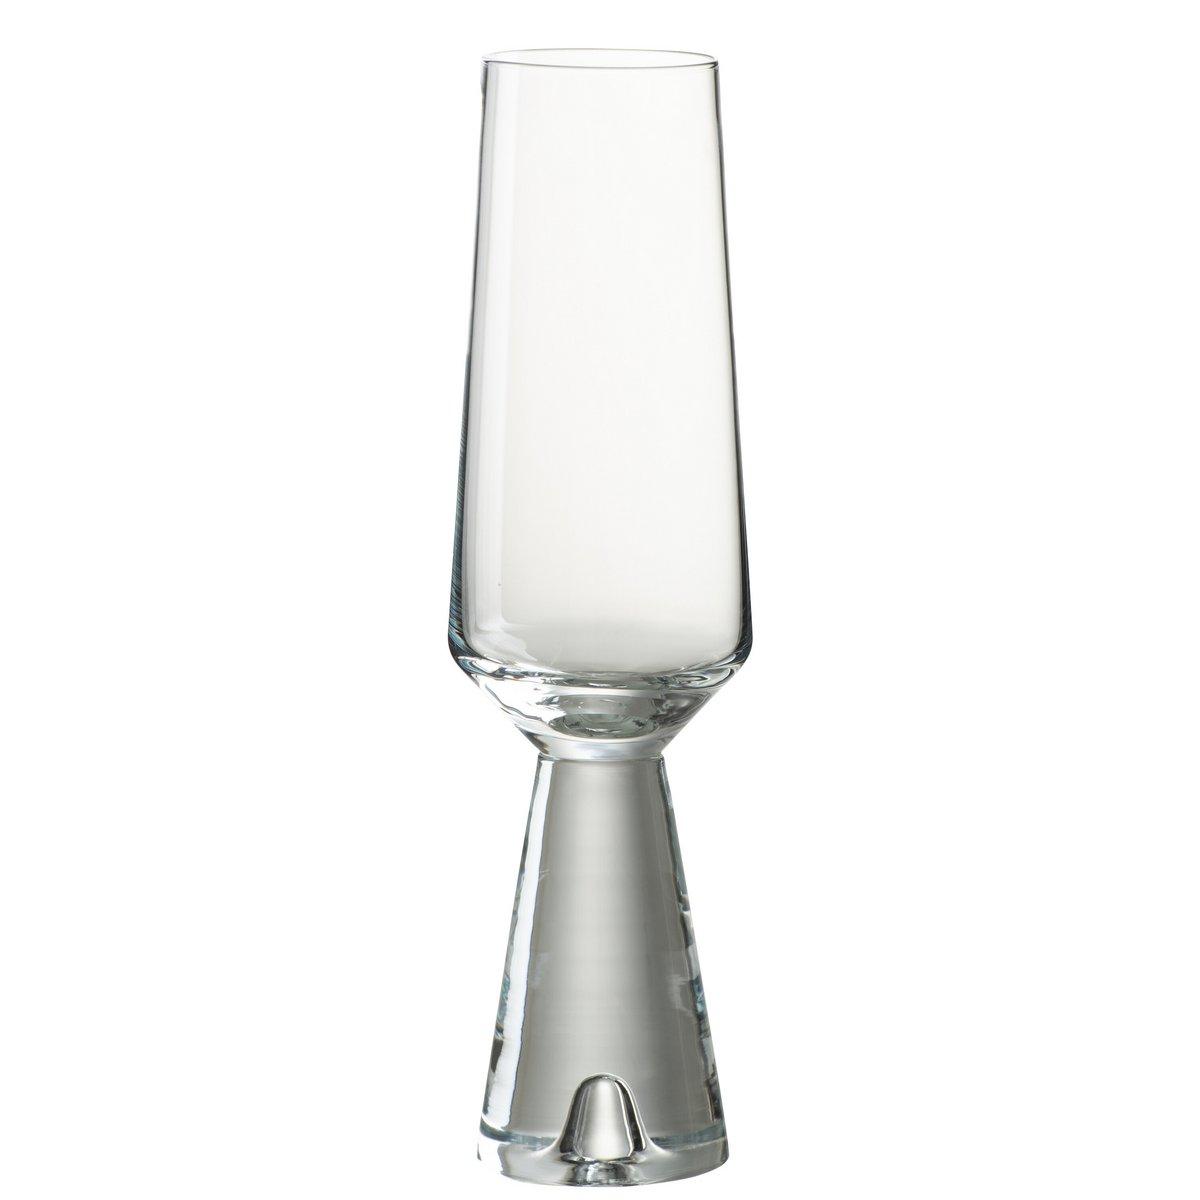 J-Line Walker Champagnerglas - Glas - transparent - 4x - HomeDesign Knaus